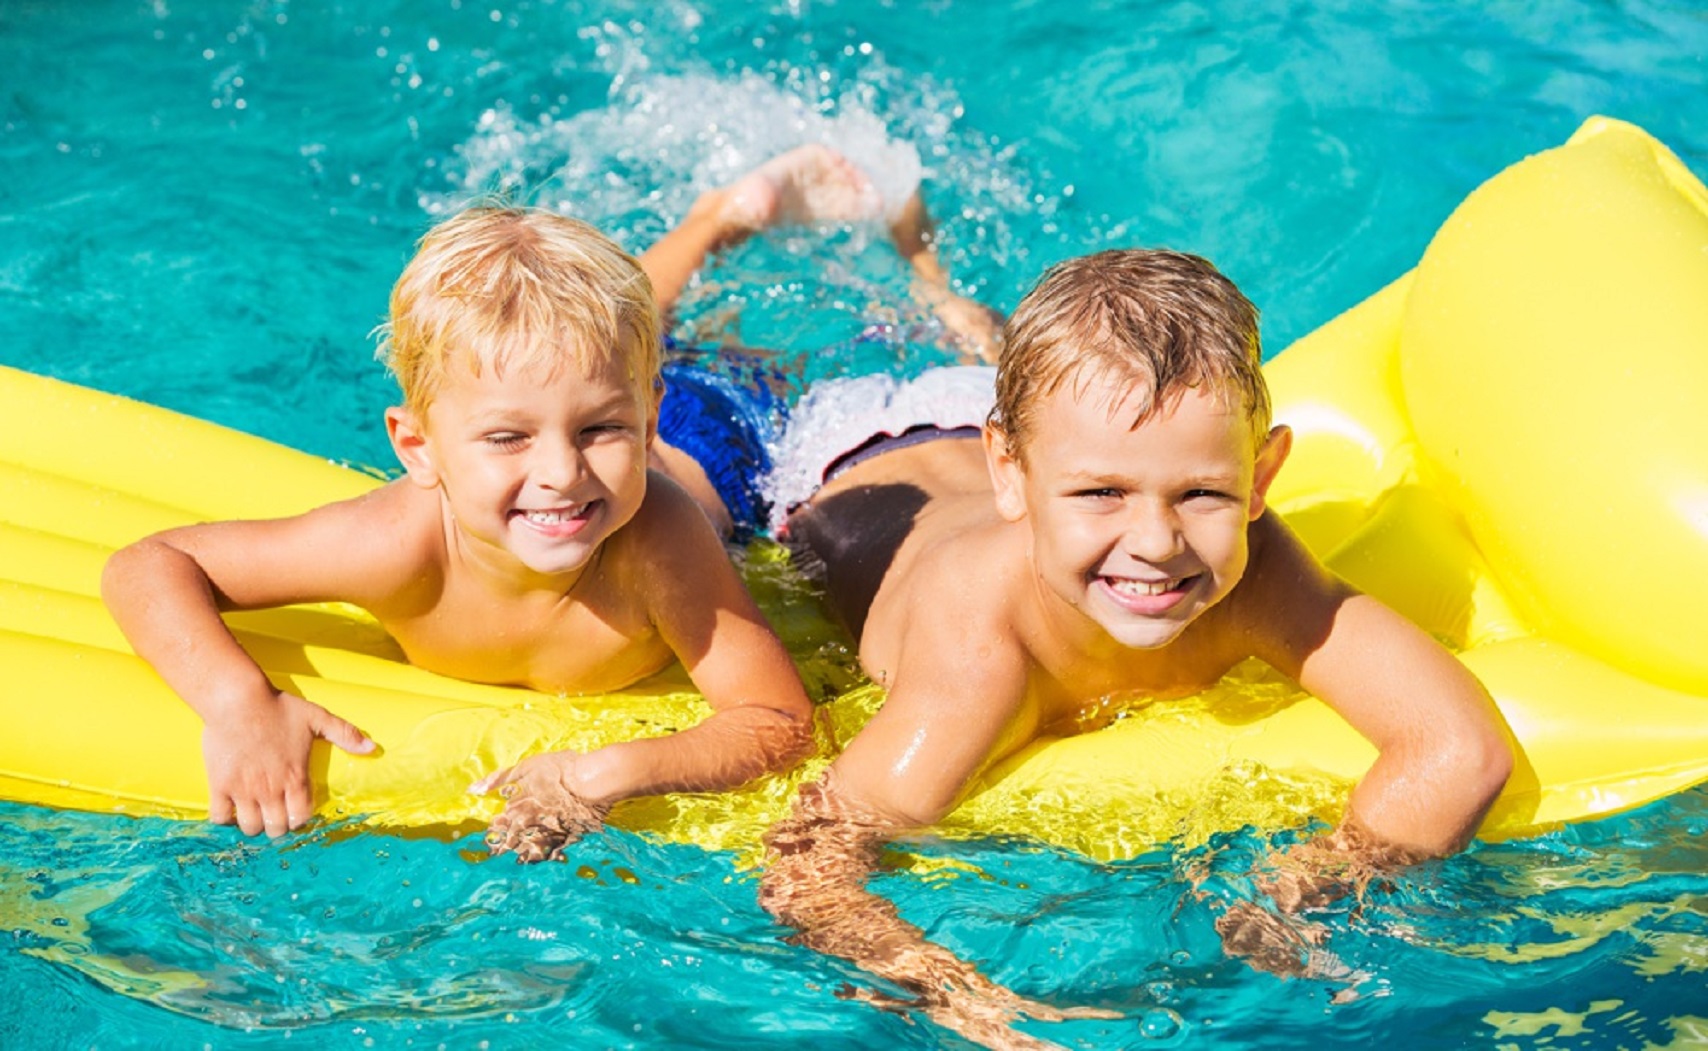 Young Kids Having Fun in Swimming Pool on Yellow Raft